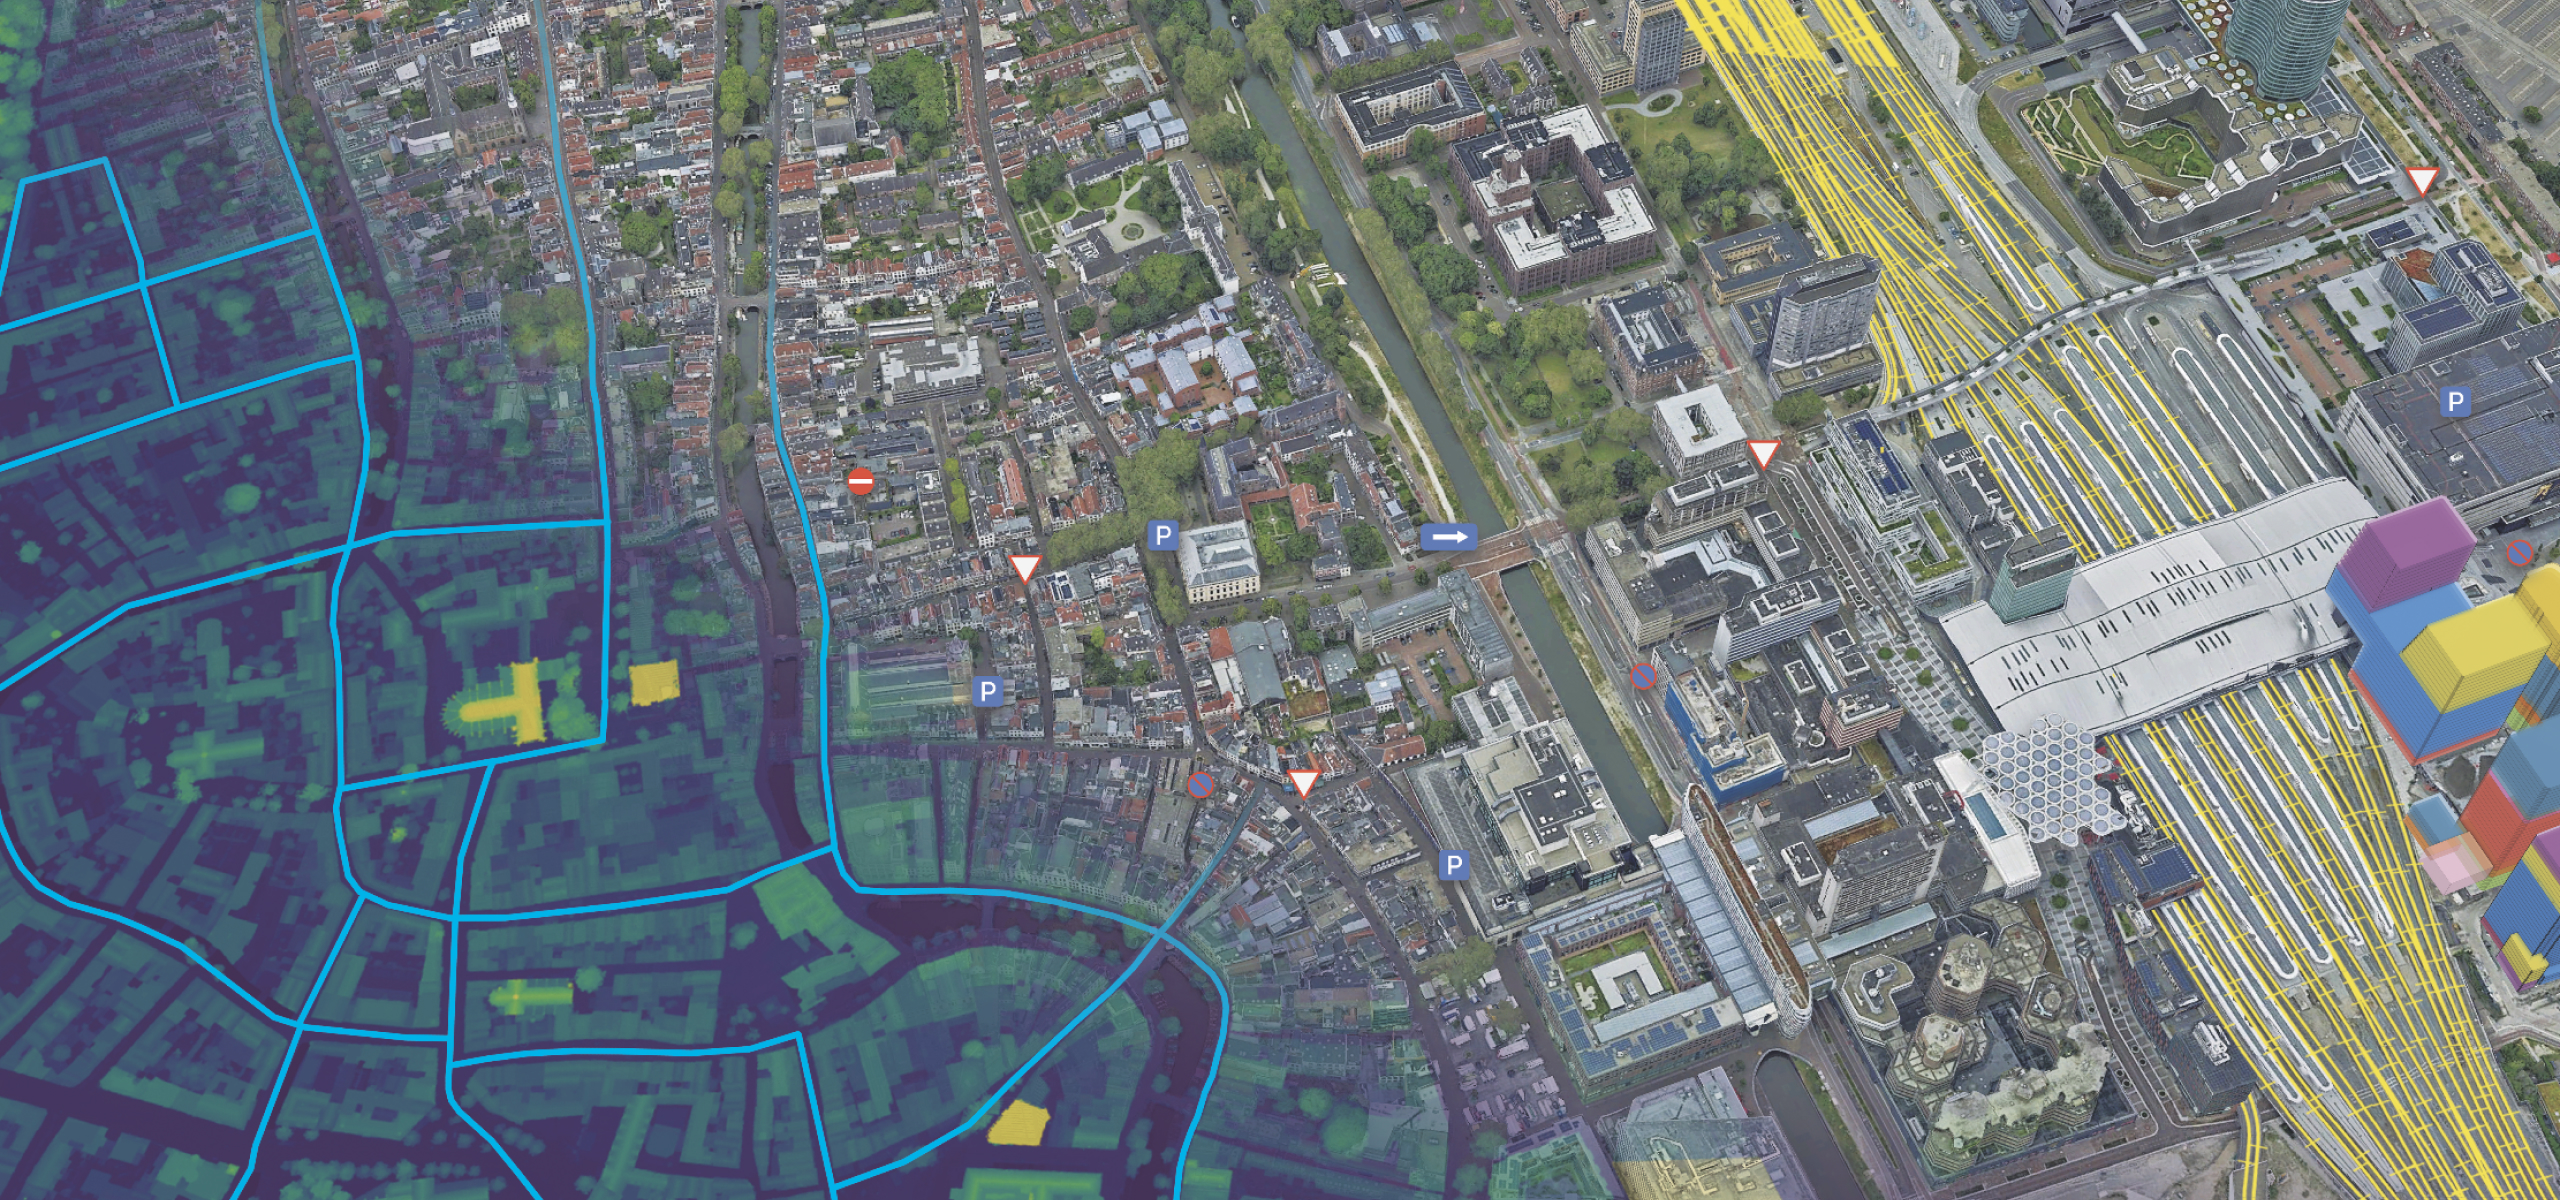 城市的 3D 网格，其中显示了建筑物、道路和绿地，并叠加了地下数据和街道数据图层 